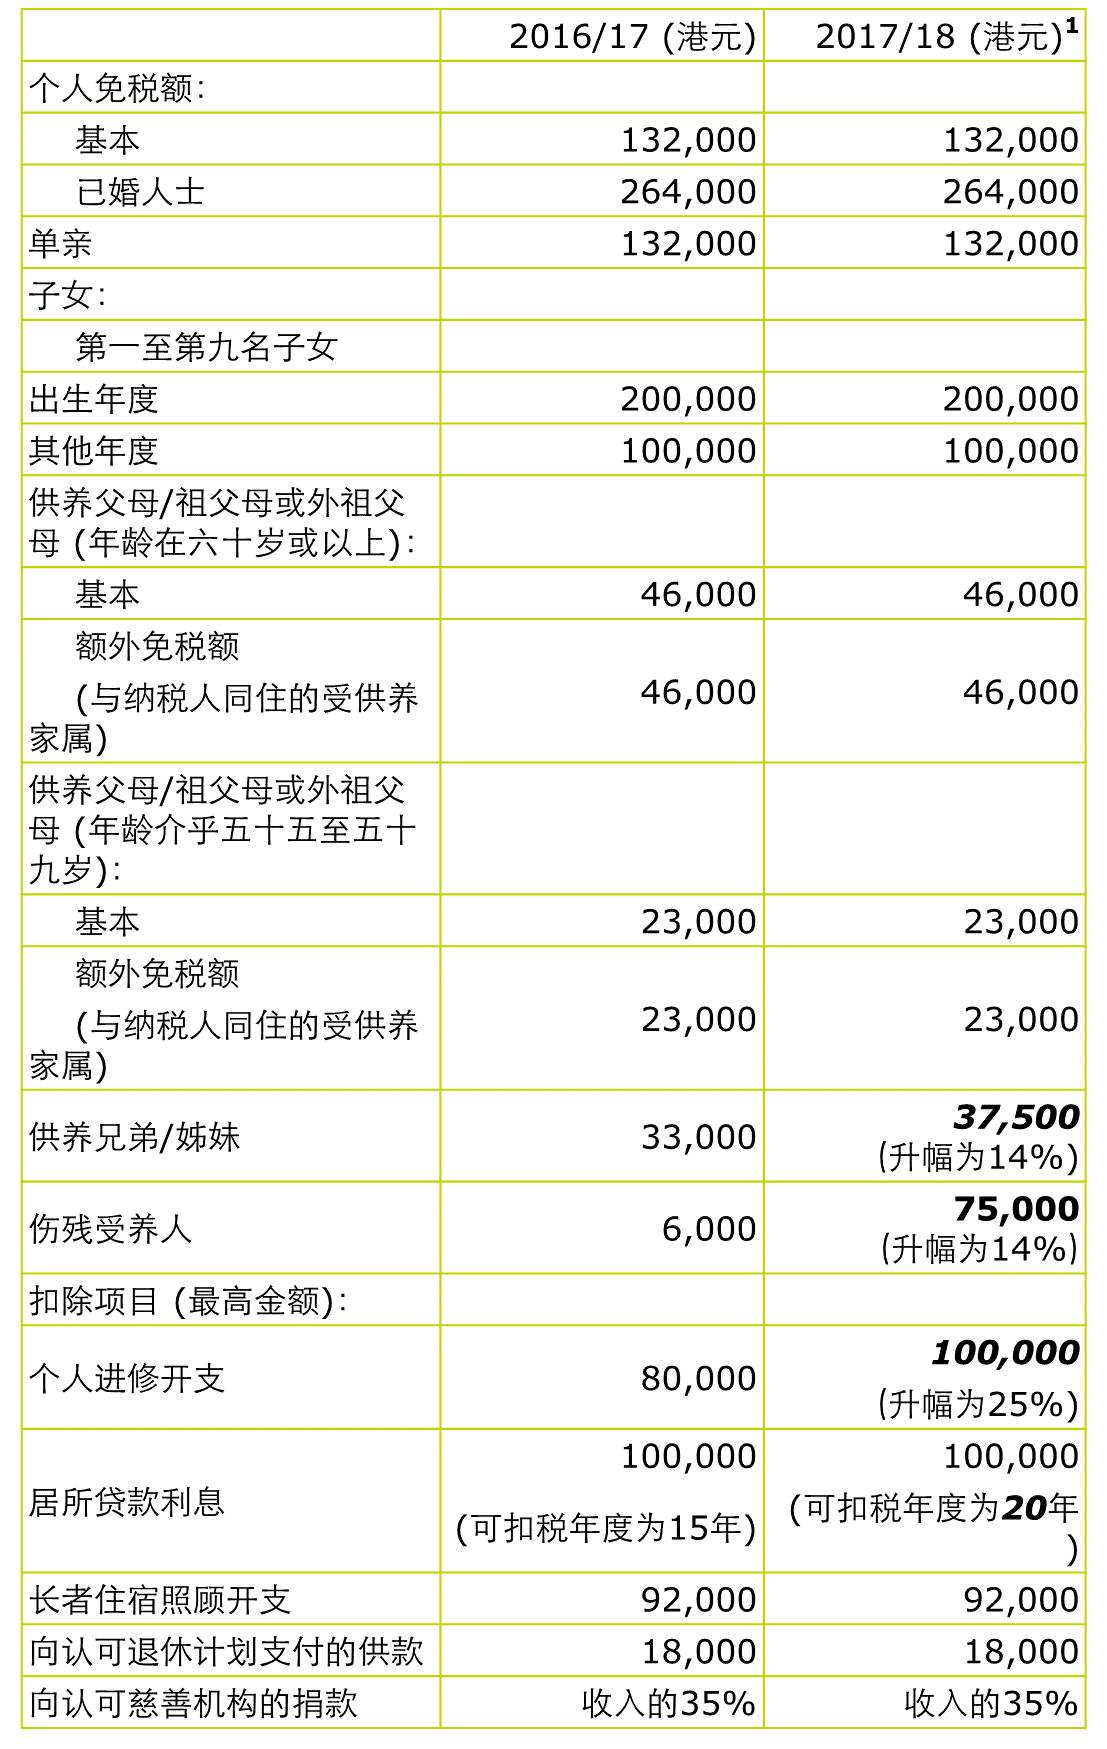 【德勤税务快讯】2017\/18香港财政预算案摘要